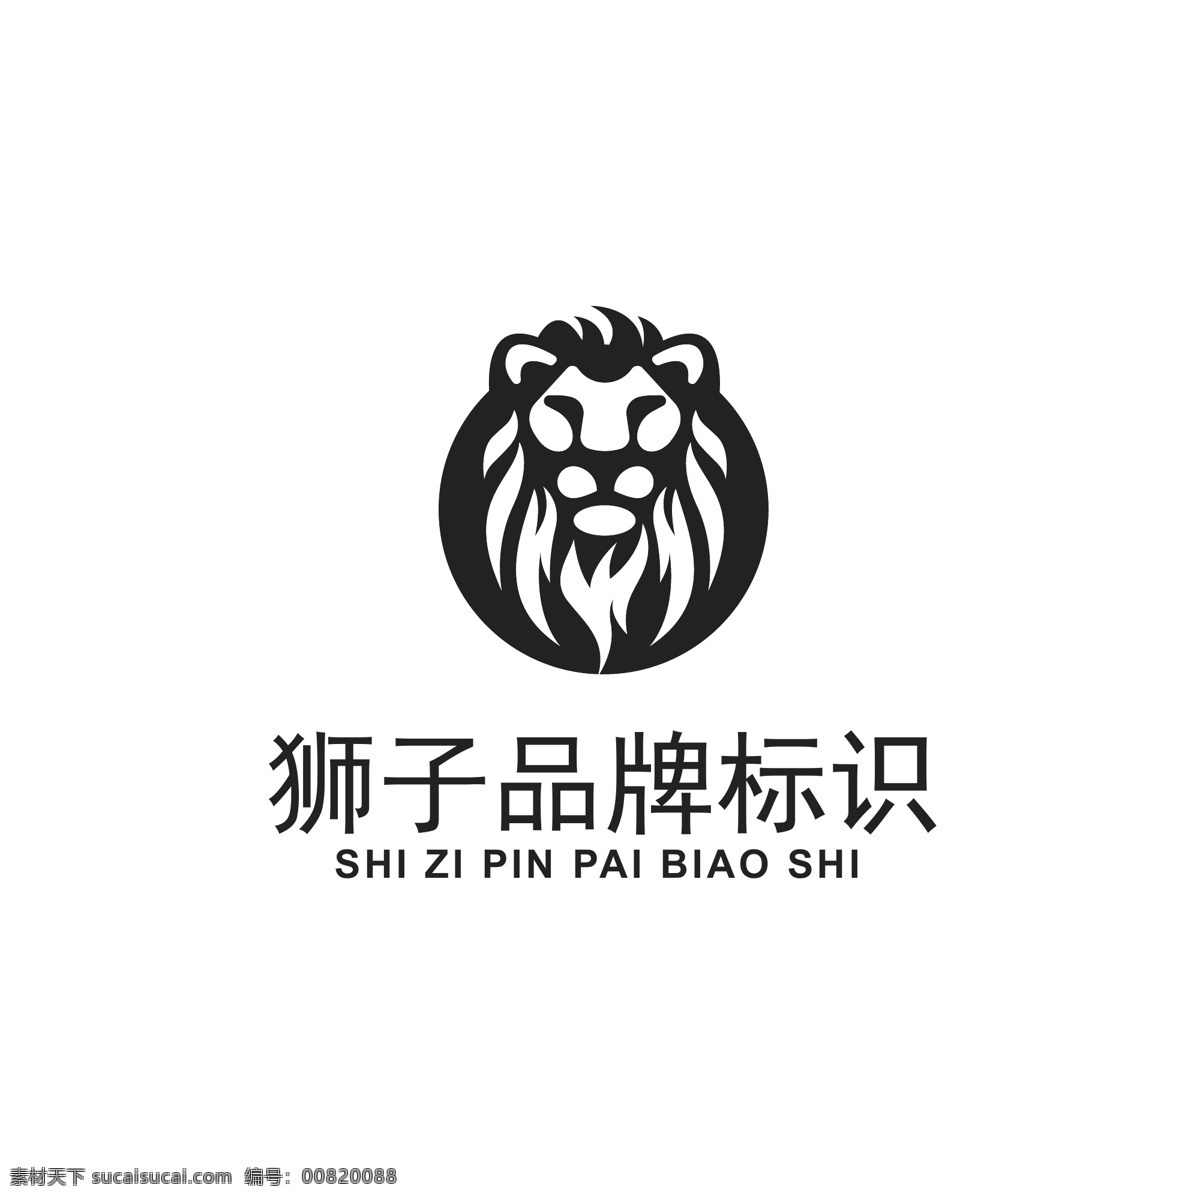 狮子 品牌 logo 狮子logo 狮子头像 狮王 品牌logo logo设计 标识设计 标志 简约大气 ai矢量